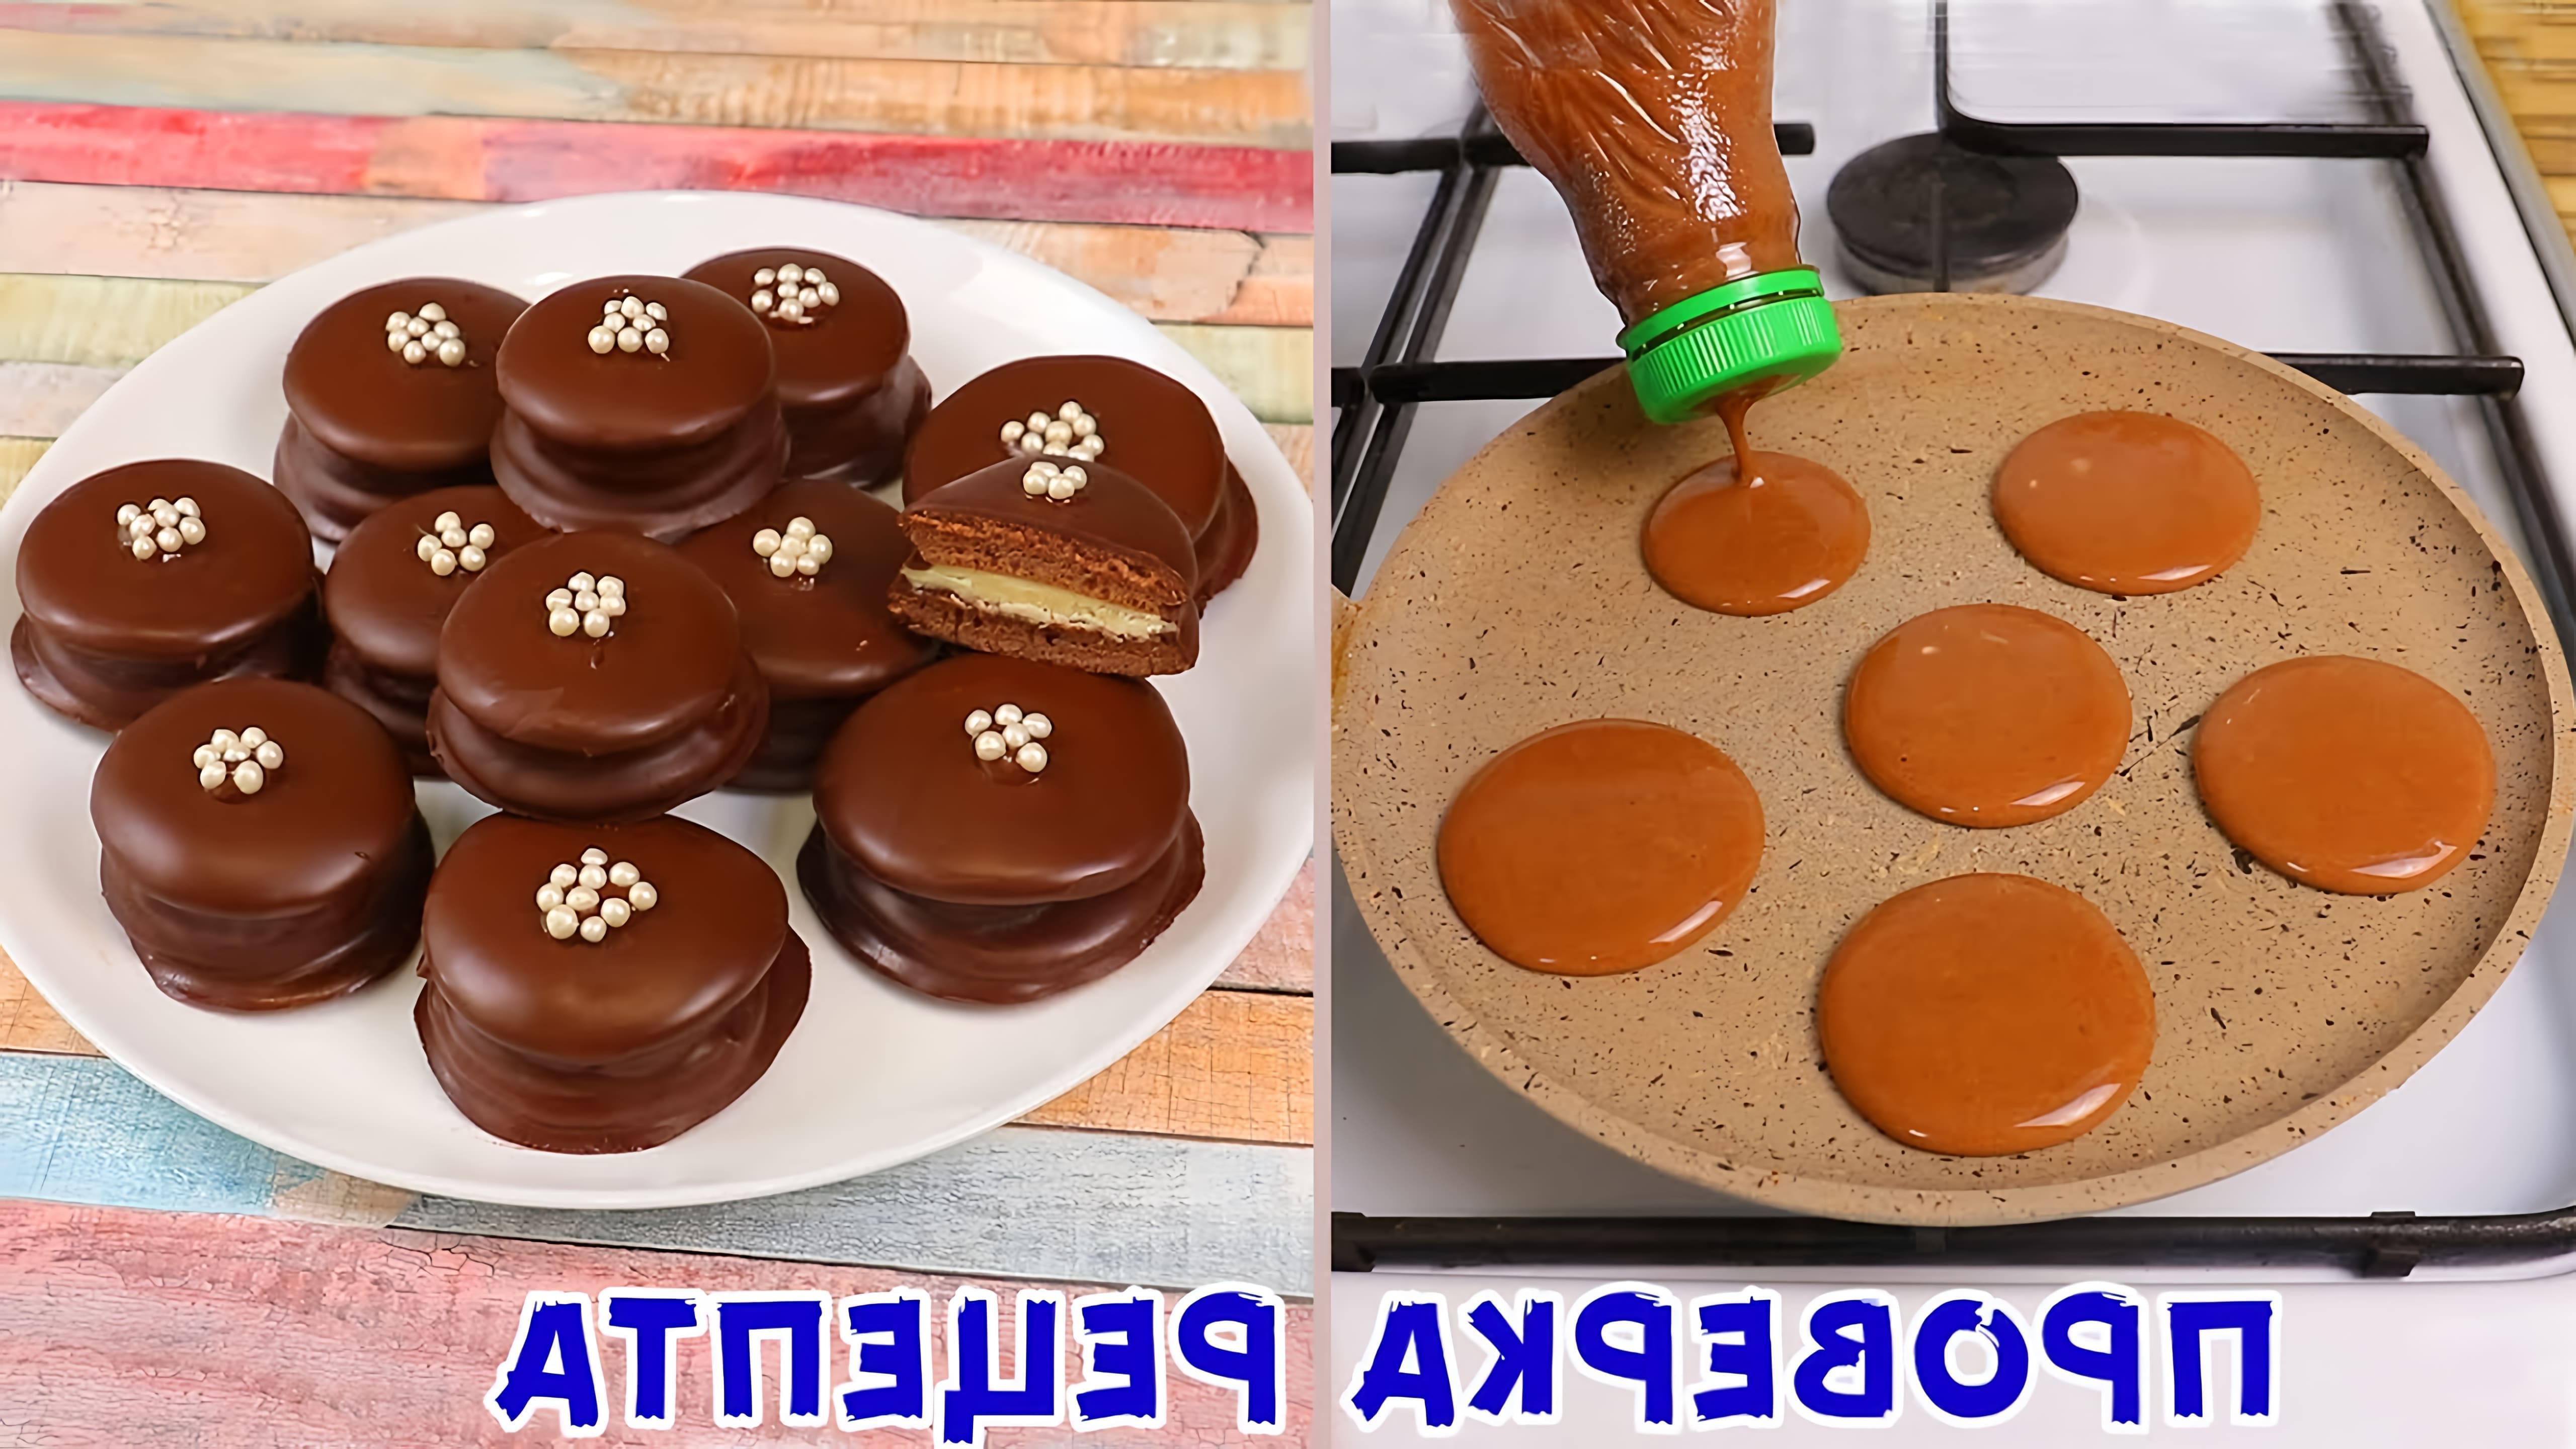 В этом видео демонстрируется рецепт приготовления печенья без использования духовки